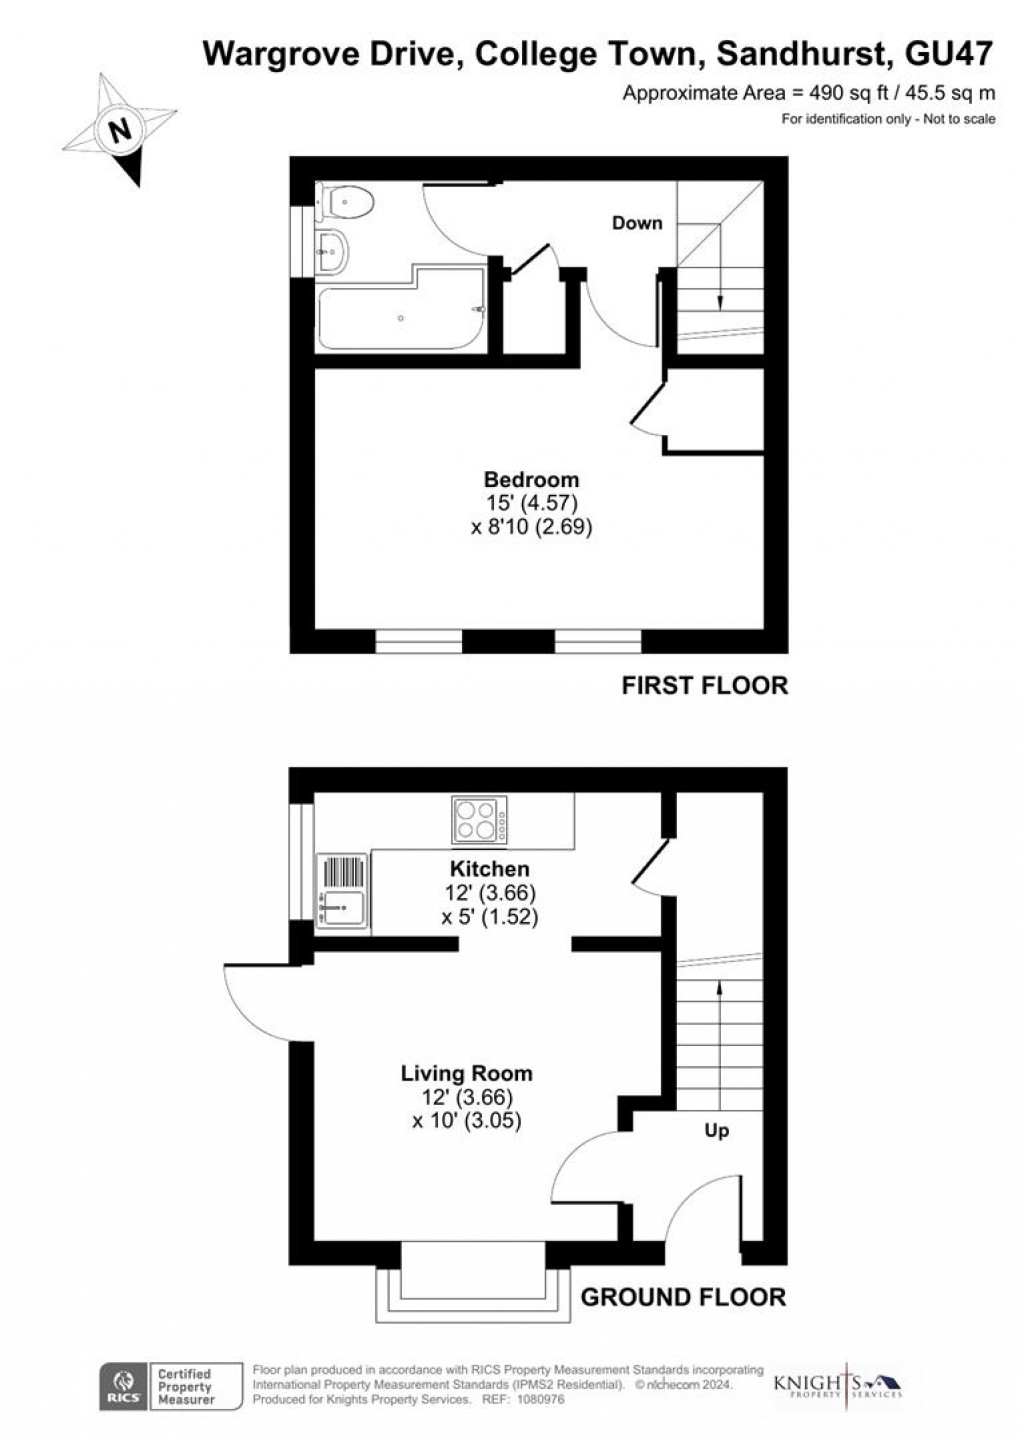 Floorplan for Wargrove Drive, College Town, Sandhurst